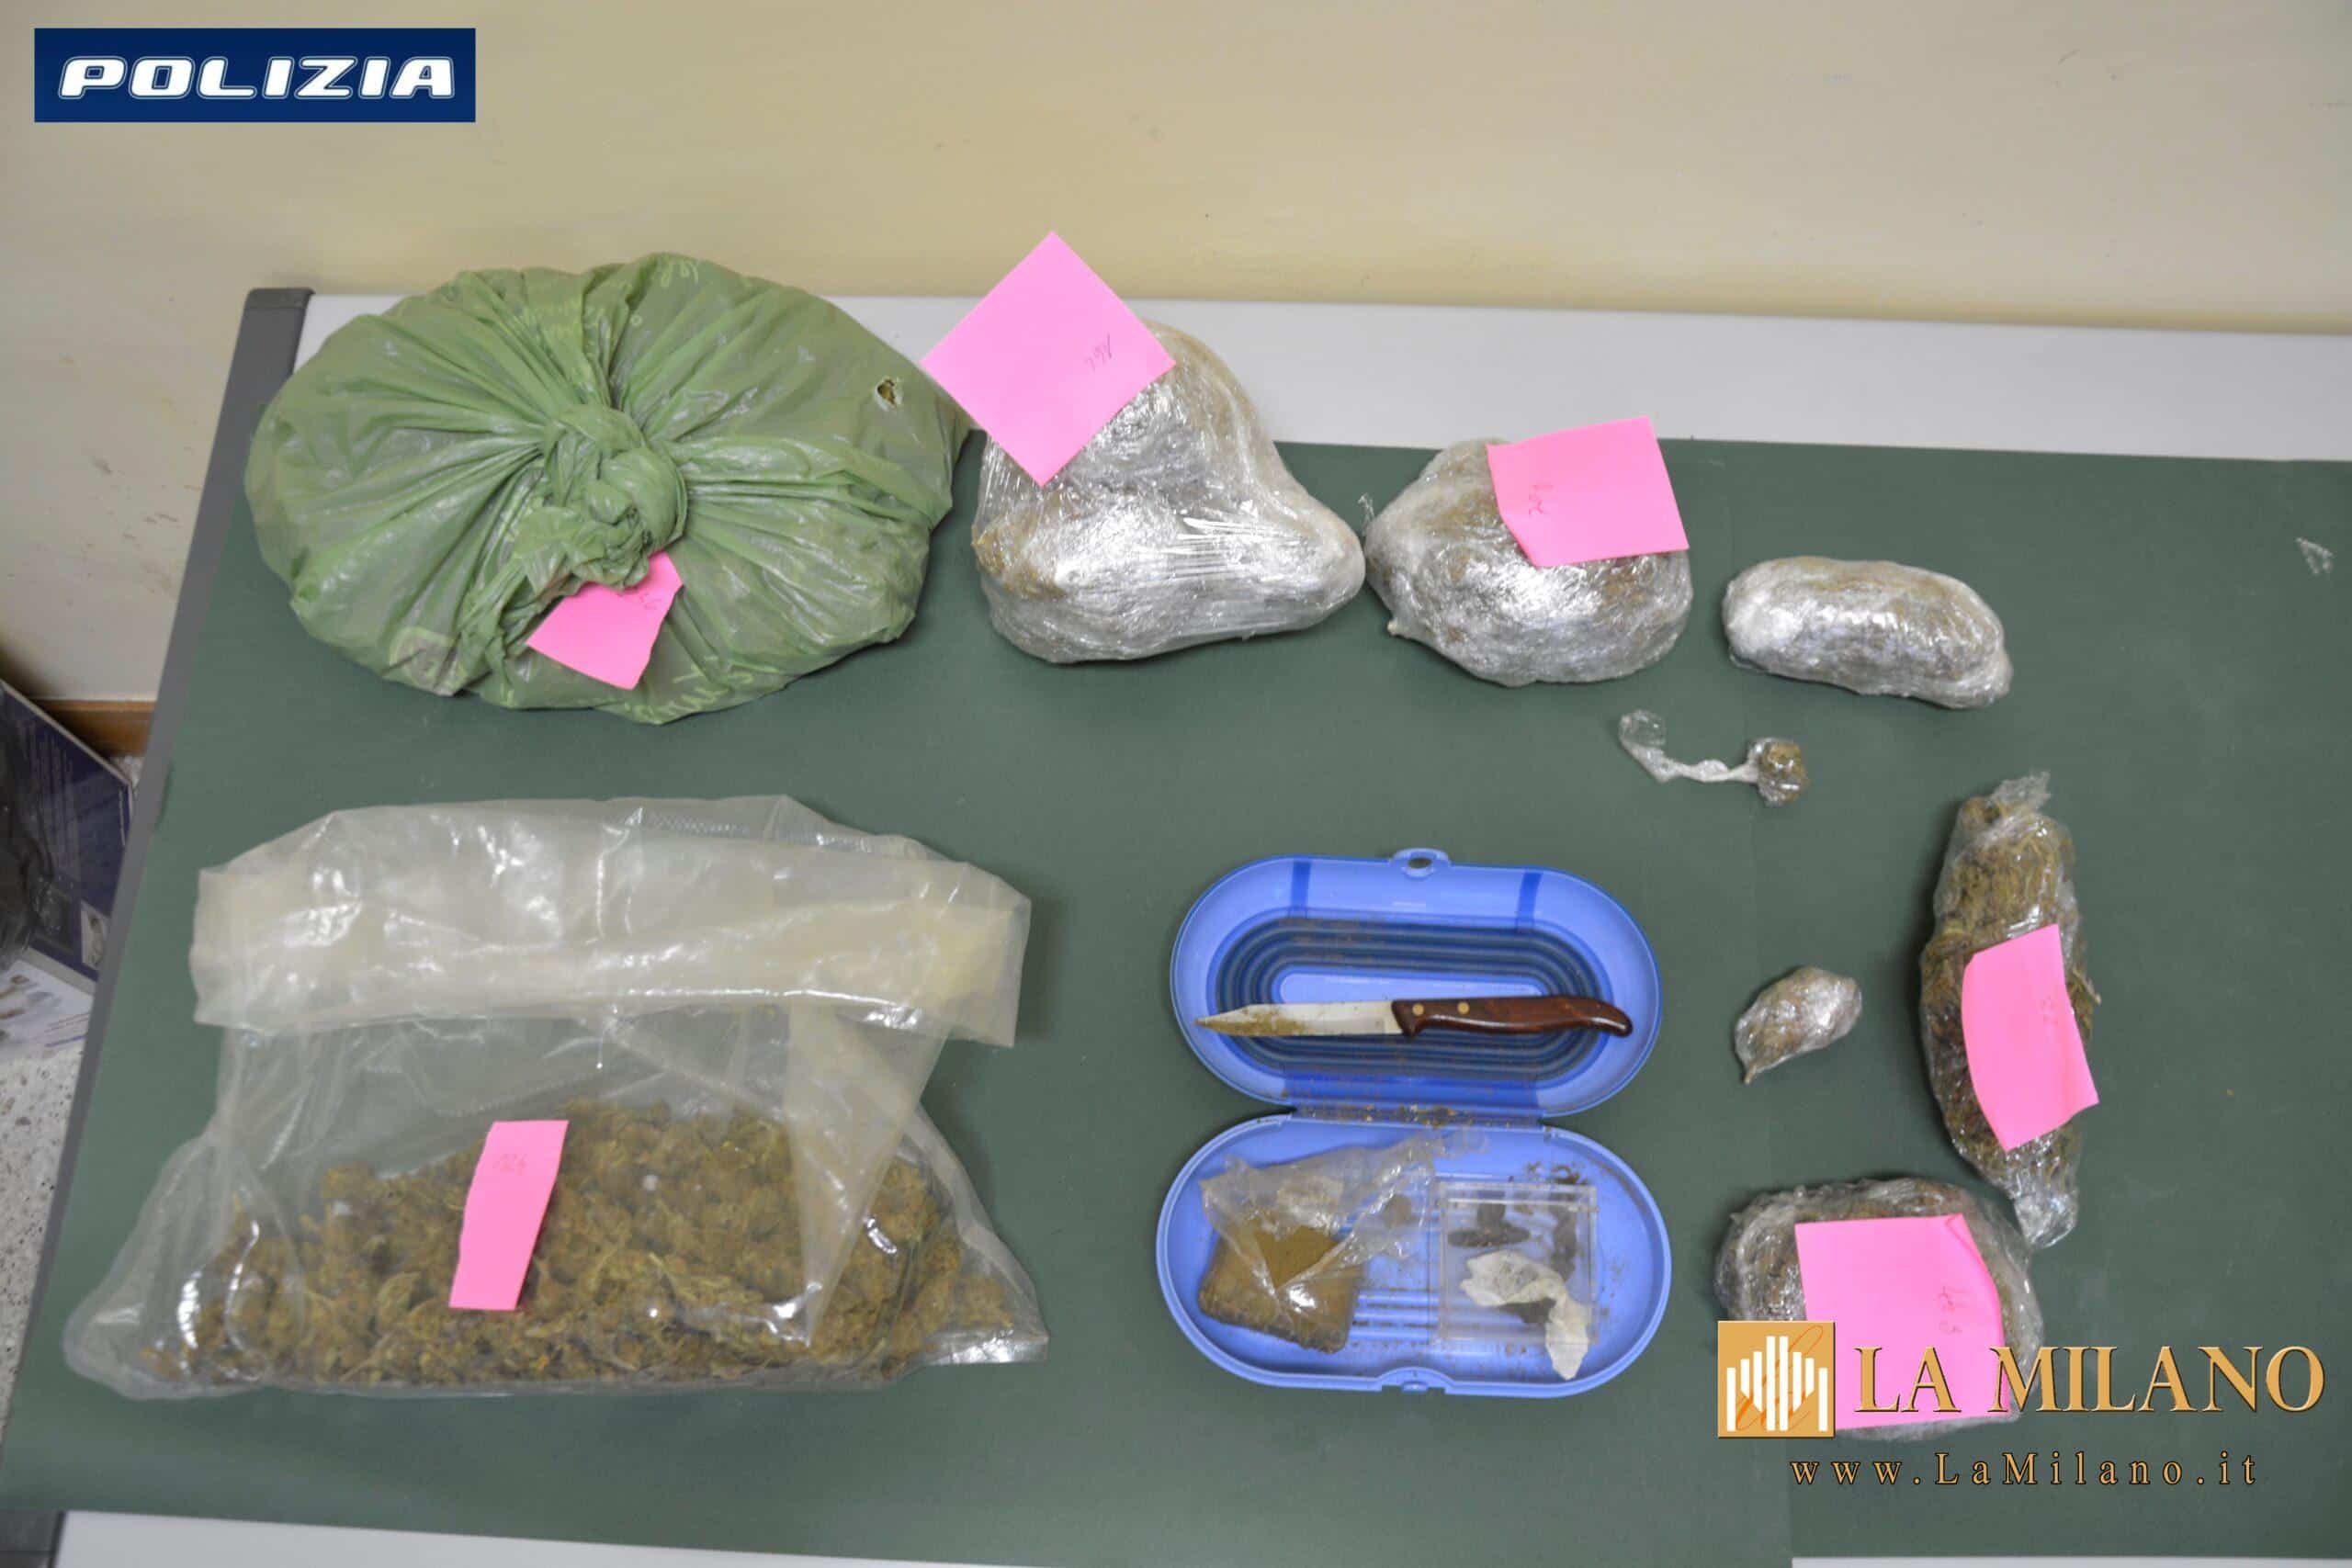 Brindisi, ritrovati quasi 4kg di marijuana e hashish. La Polizia di Stato arresta due uomini er il reato di detenzione ai fini di spaccio